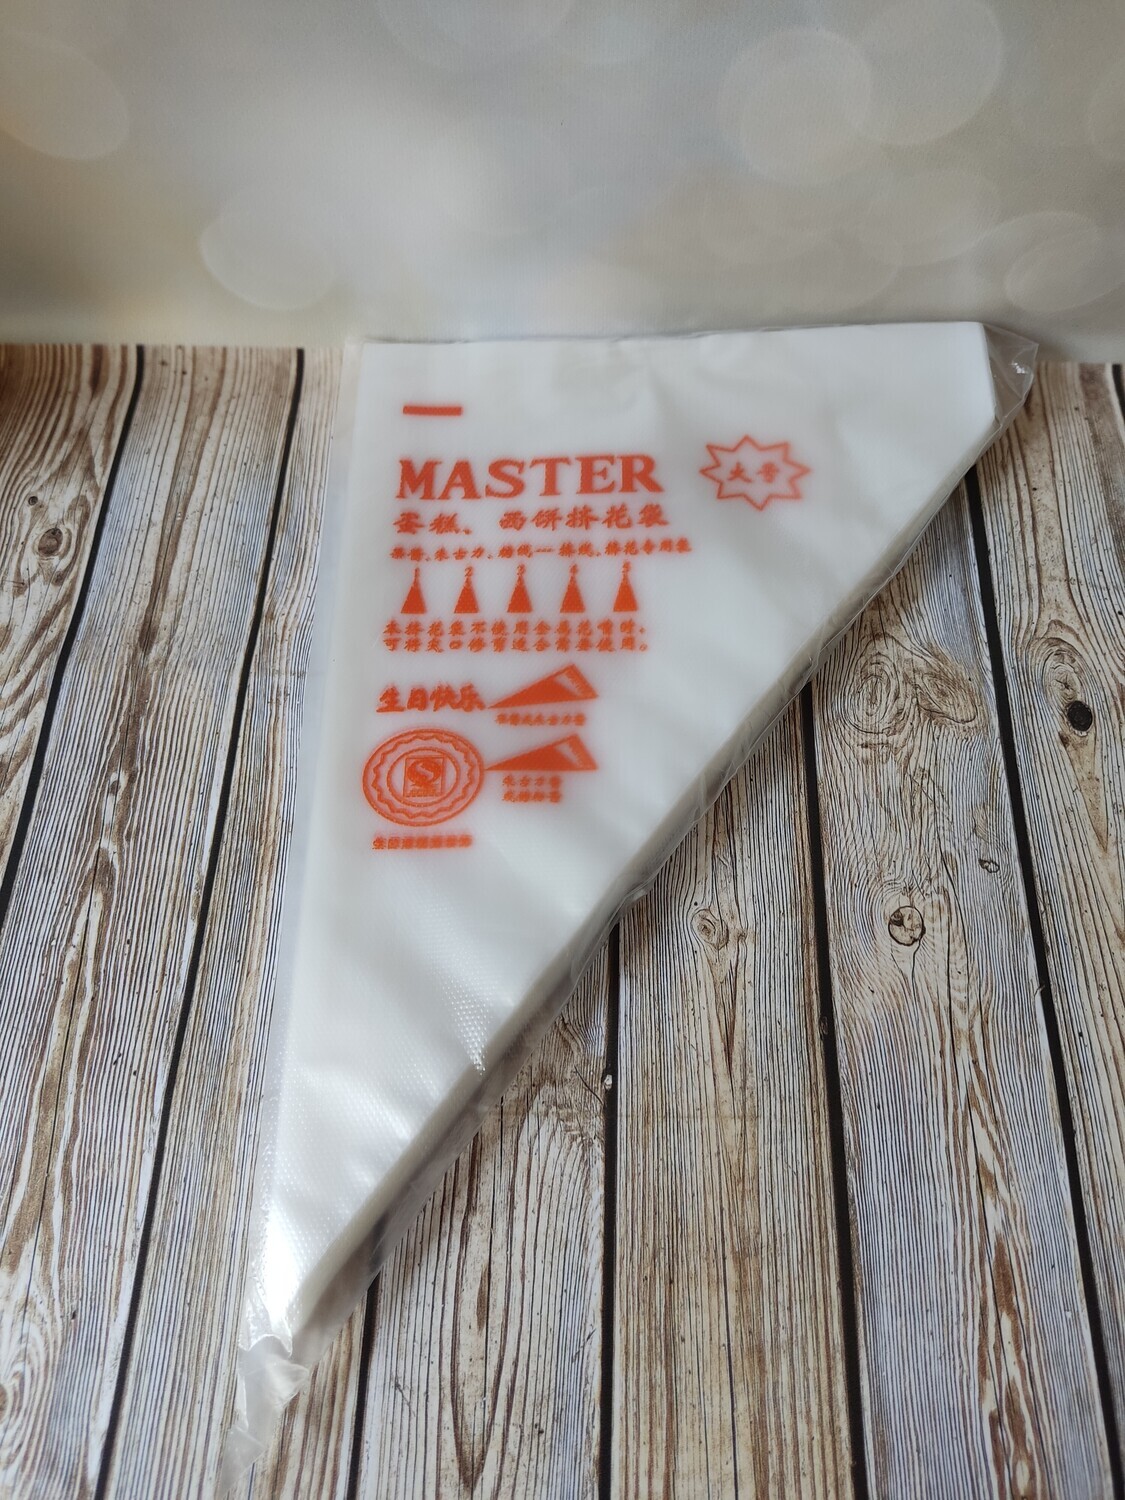 Мешки кондитерские "S" Master 100шт, 25см полиэтилен (Китай)